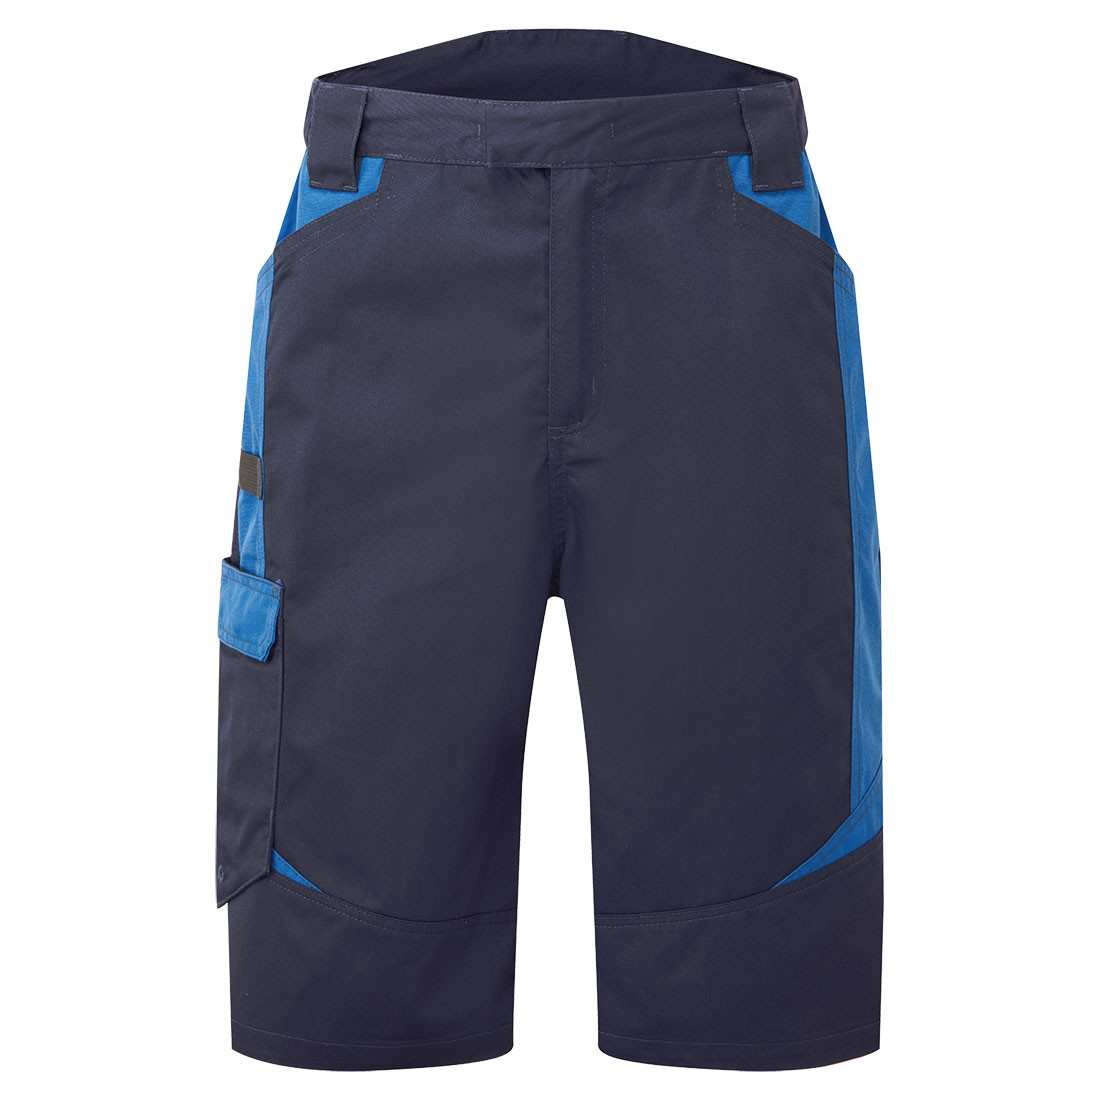 Shorts Lavage Industriel WX3 - Les vêtements de protection